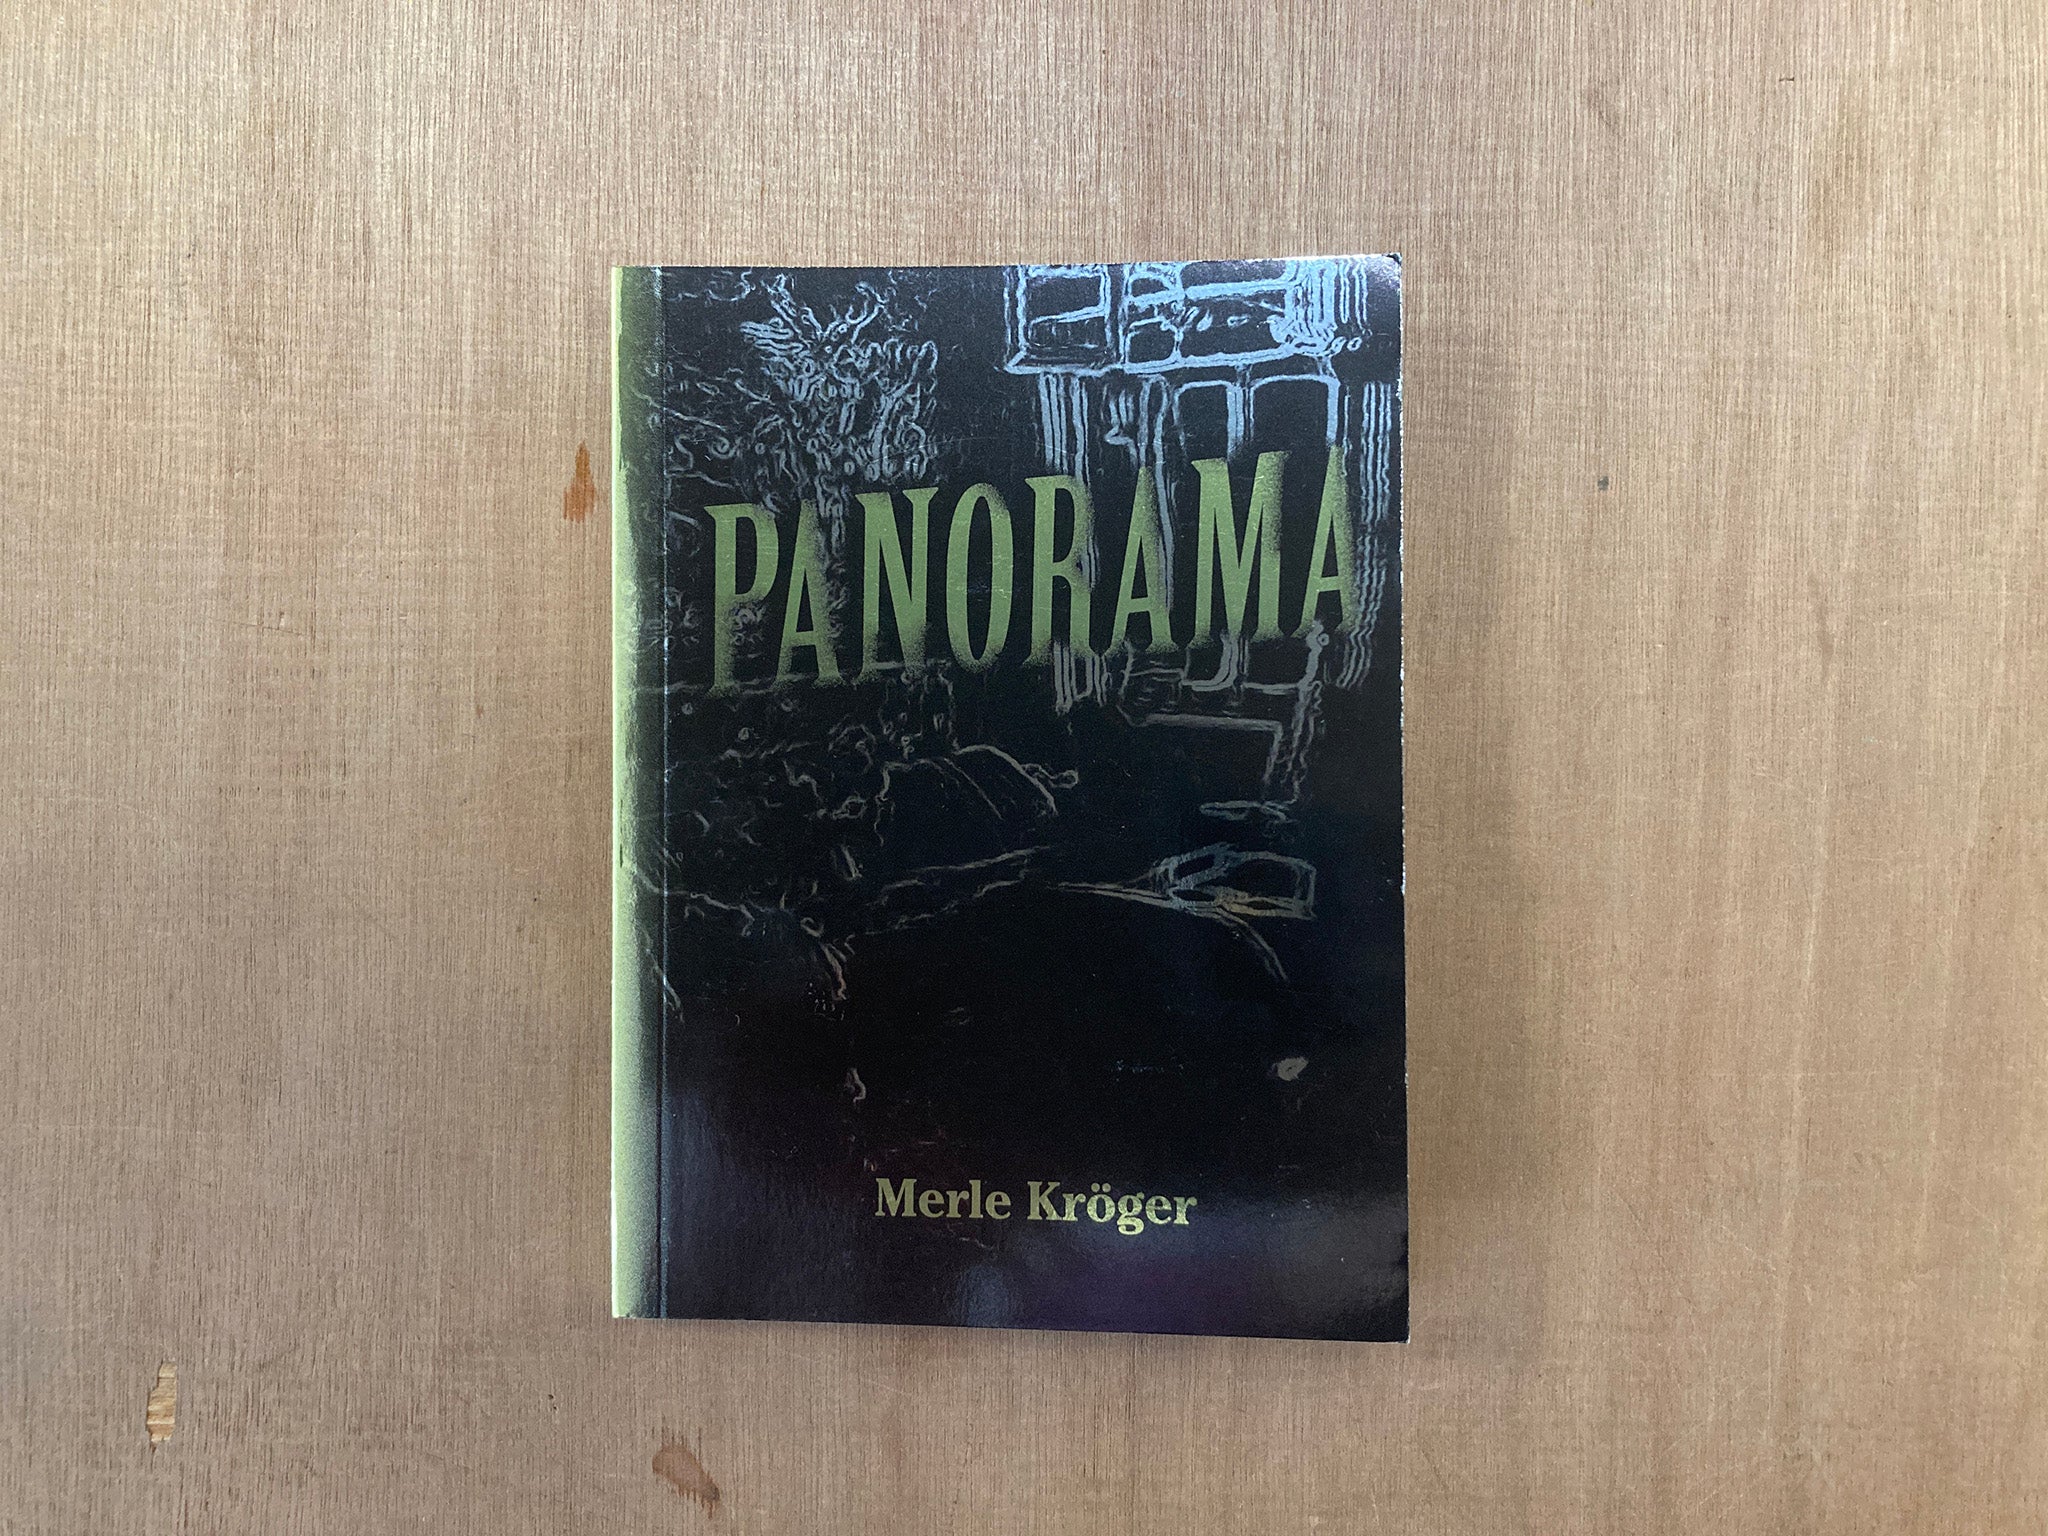 PANORAMA by Merle Kröger